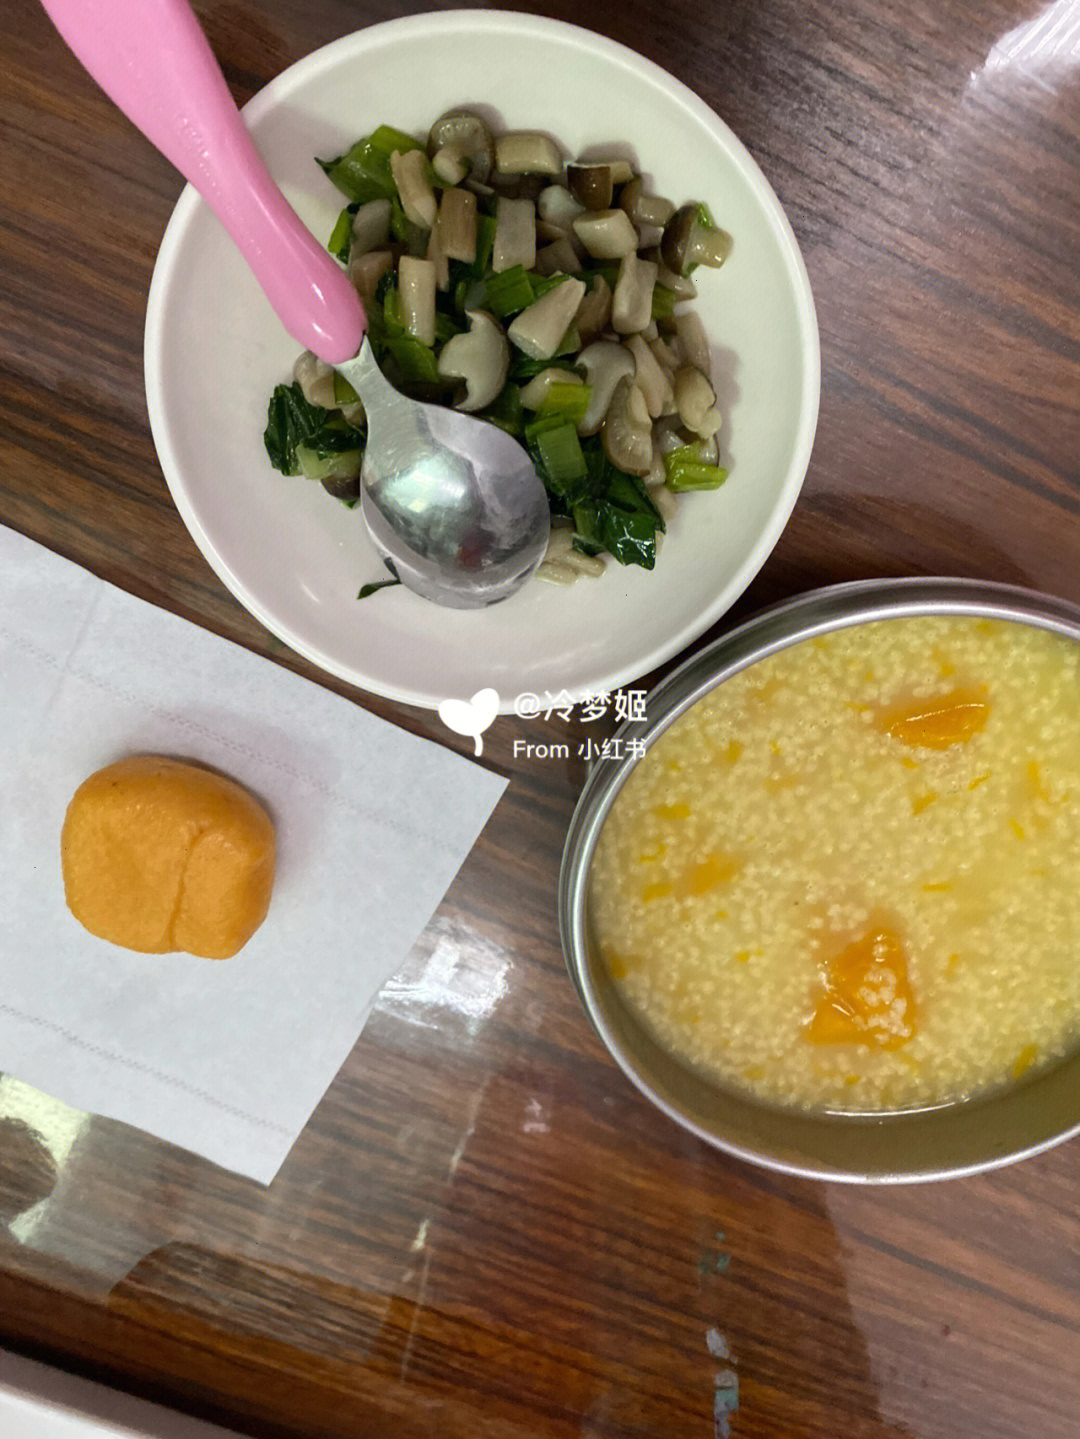 早餐:小米南瓜粥 馒头 炒青菜蟹味菇午餐:花生酱拌面(配菜:菠菜)晚餐